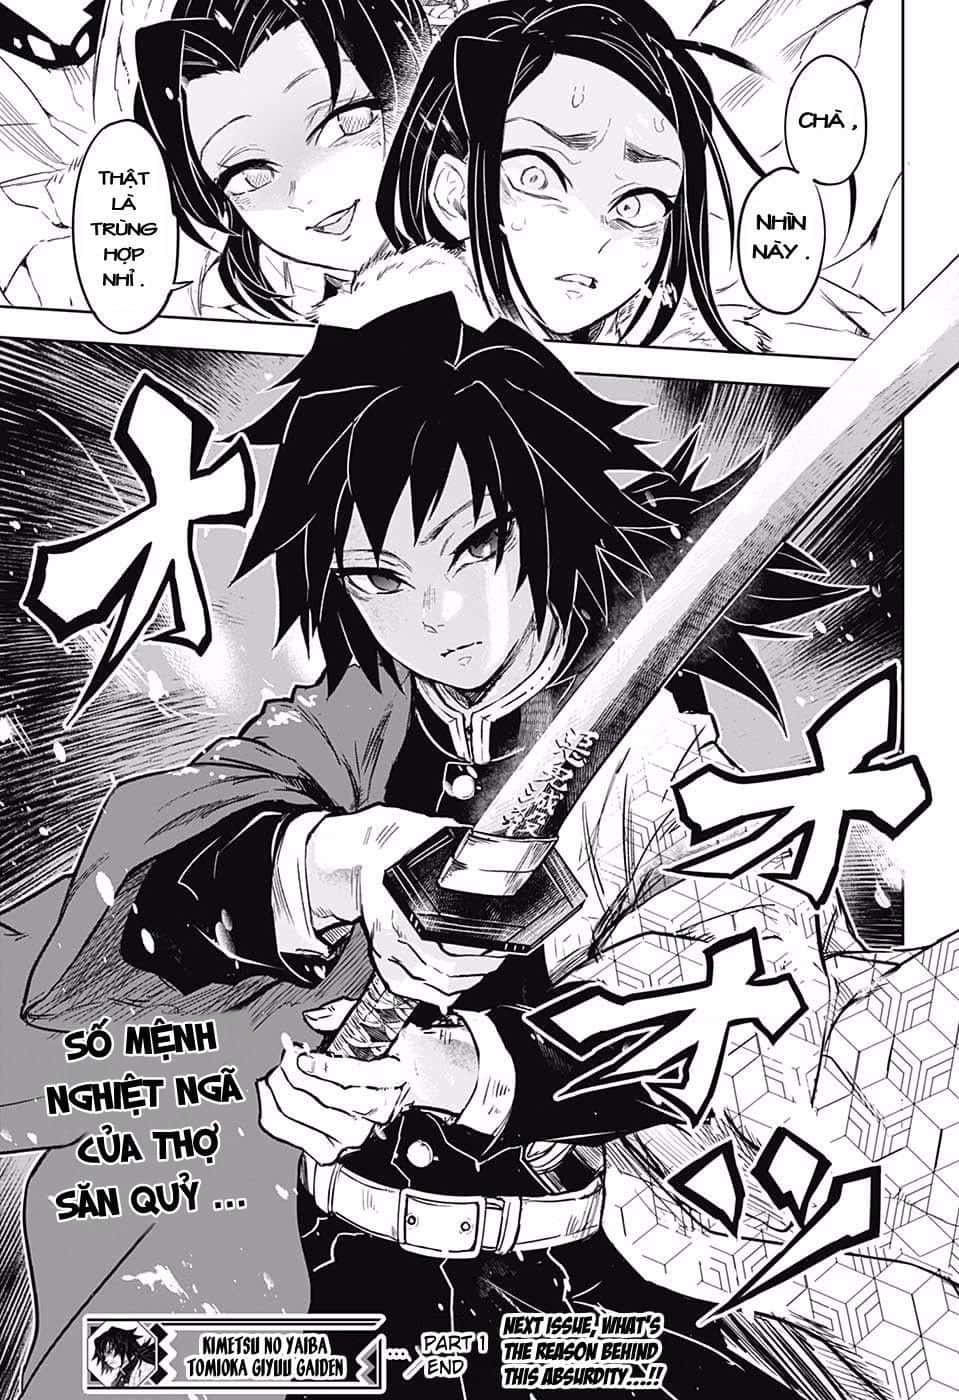 Demon Slayer Manga Wallpaper: Tận hưởng cuộc phiêu lưu tranh bá đạo của Thanh Gươm Diệt Quỷ với những hình nền tuyệt đẹp trích từ Manga! Chúng tôi hứa sẽ không làm bạn thất vọng với những hình nền đẹp và chất lượng!